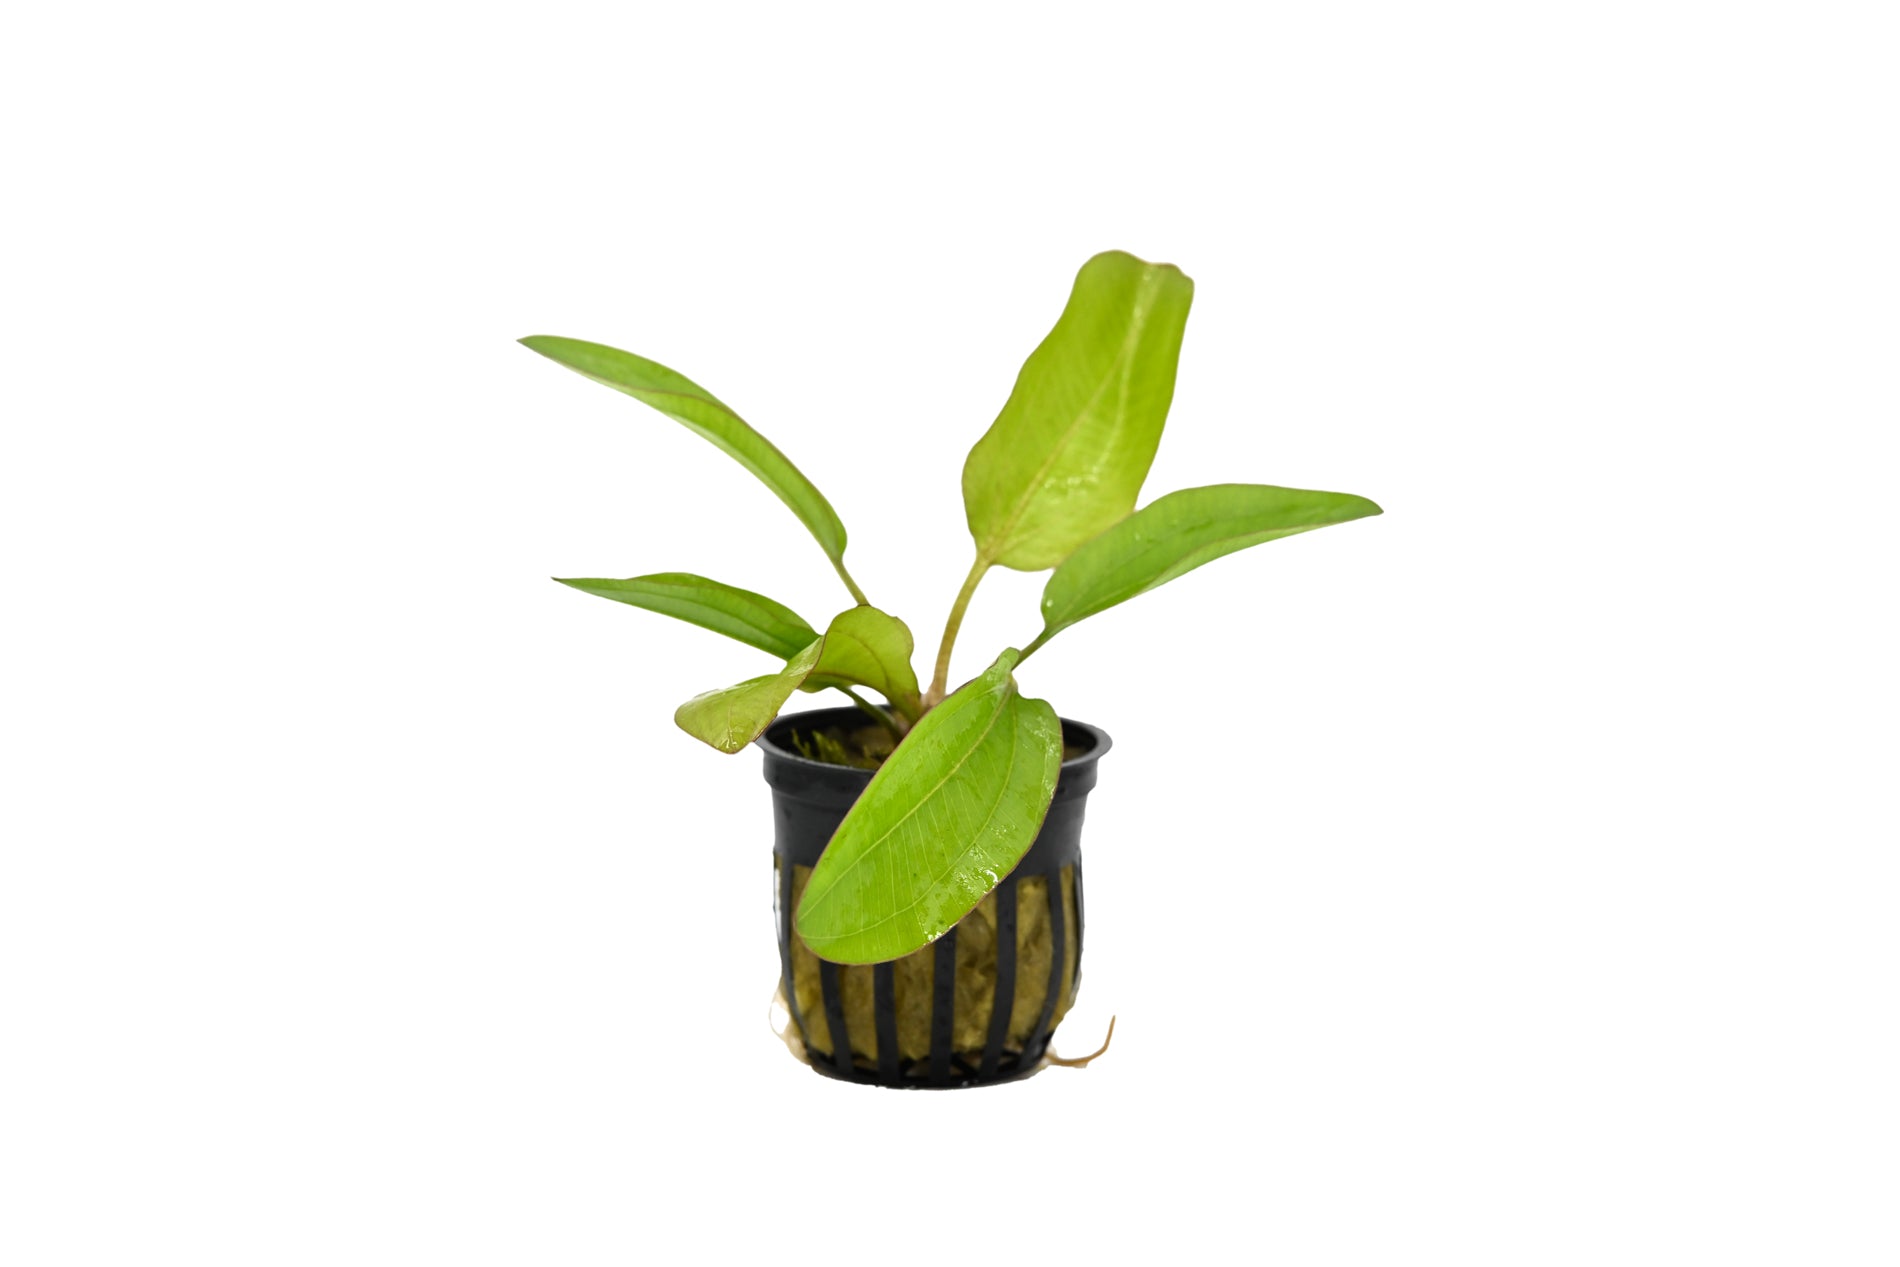 Melon Sword | Echinodorus osiris| Pot Plant | Aquatic Plants | Plants in an Aquarium